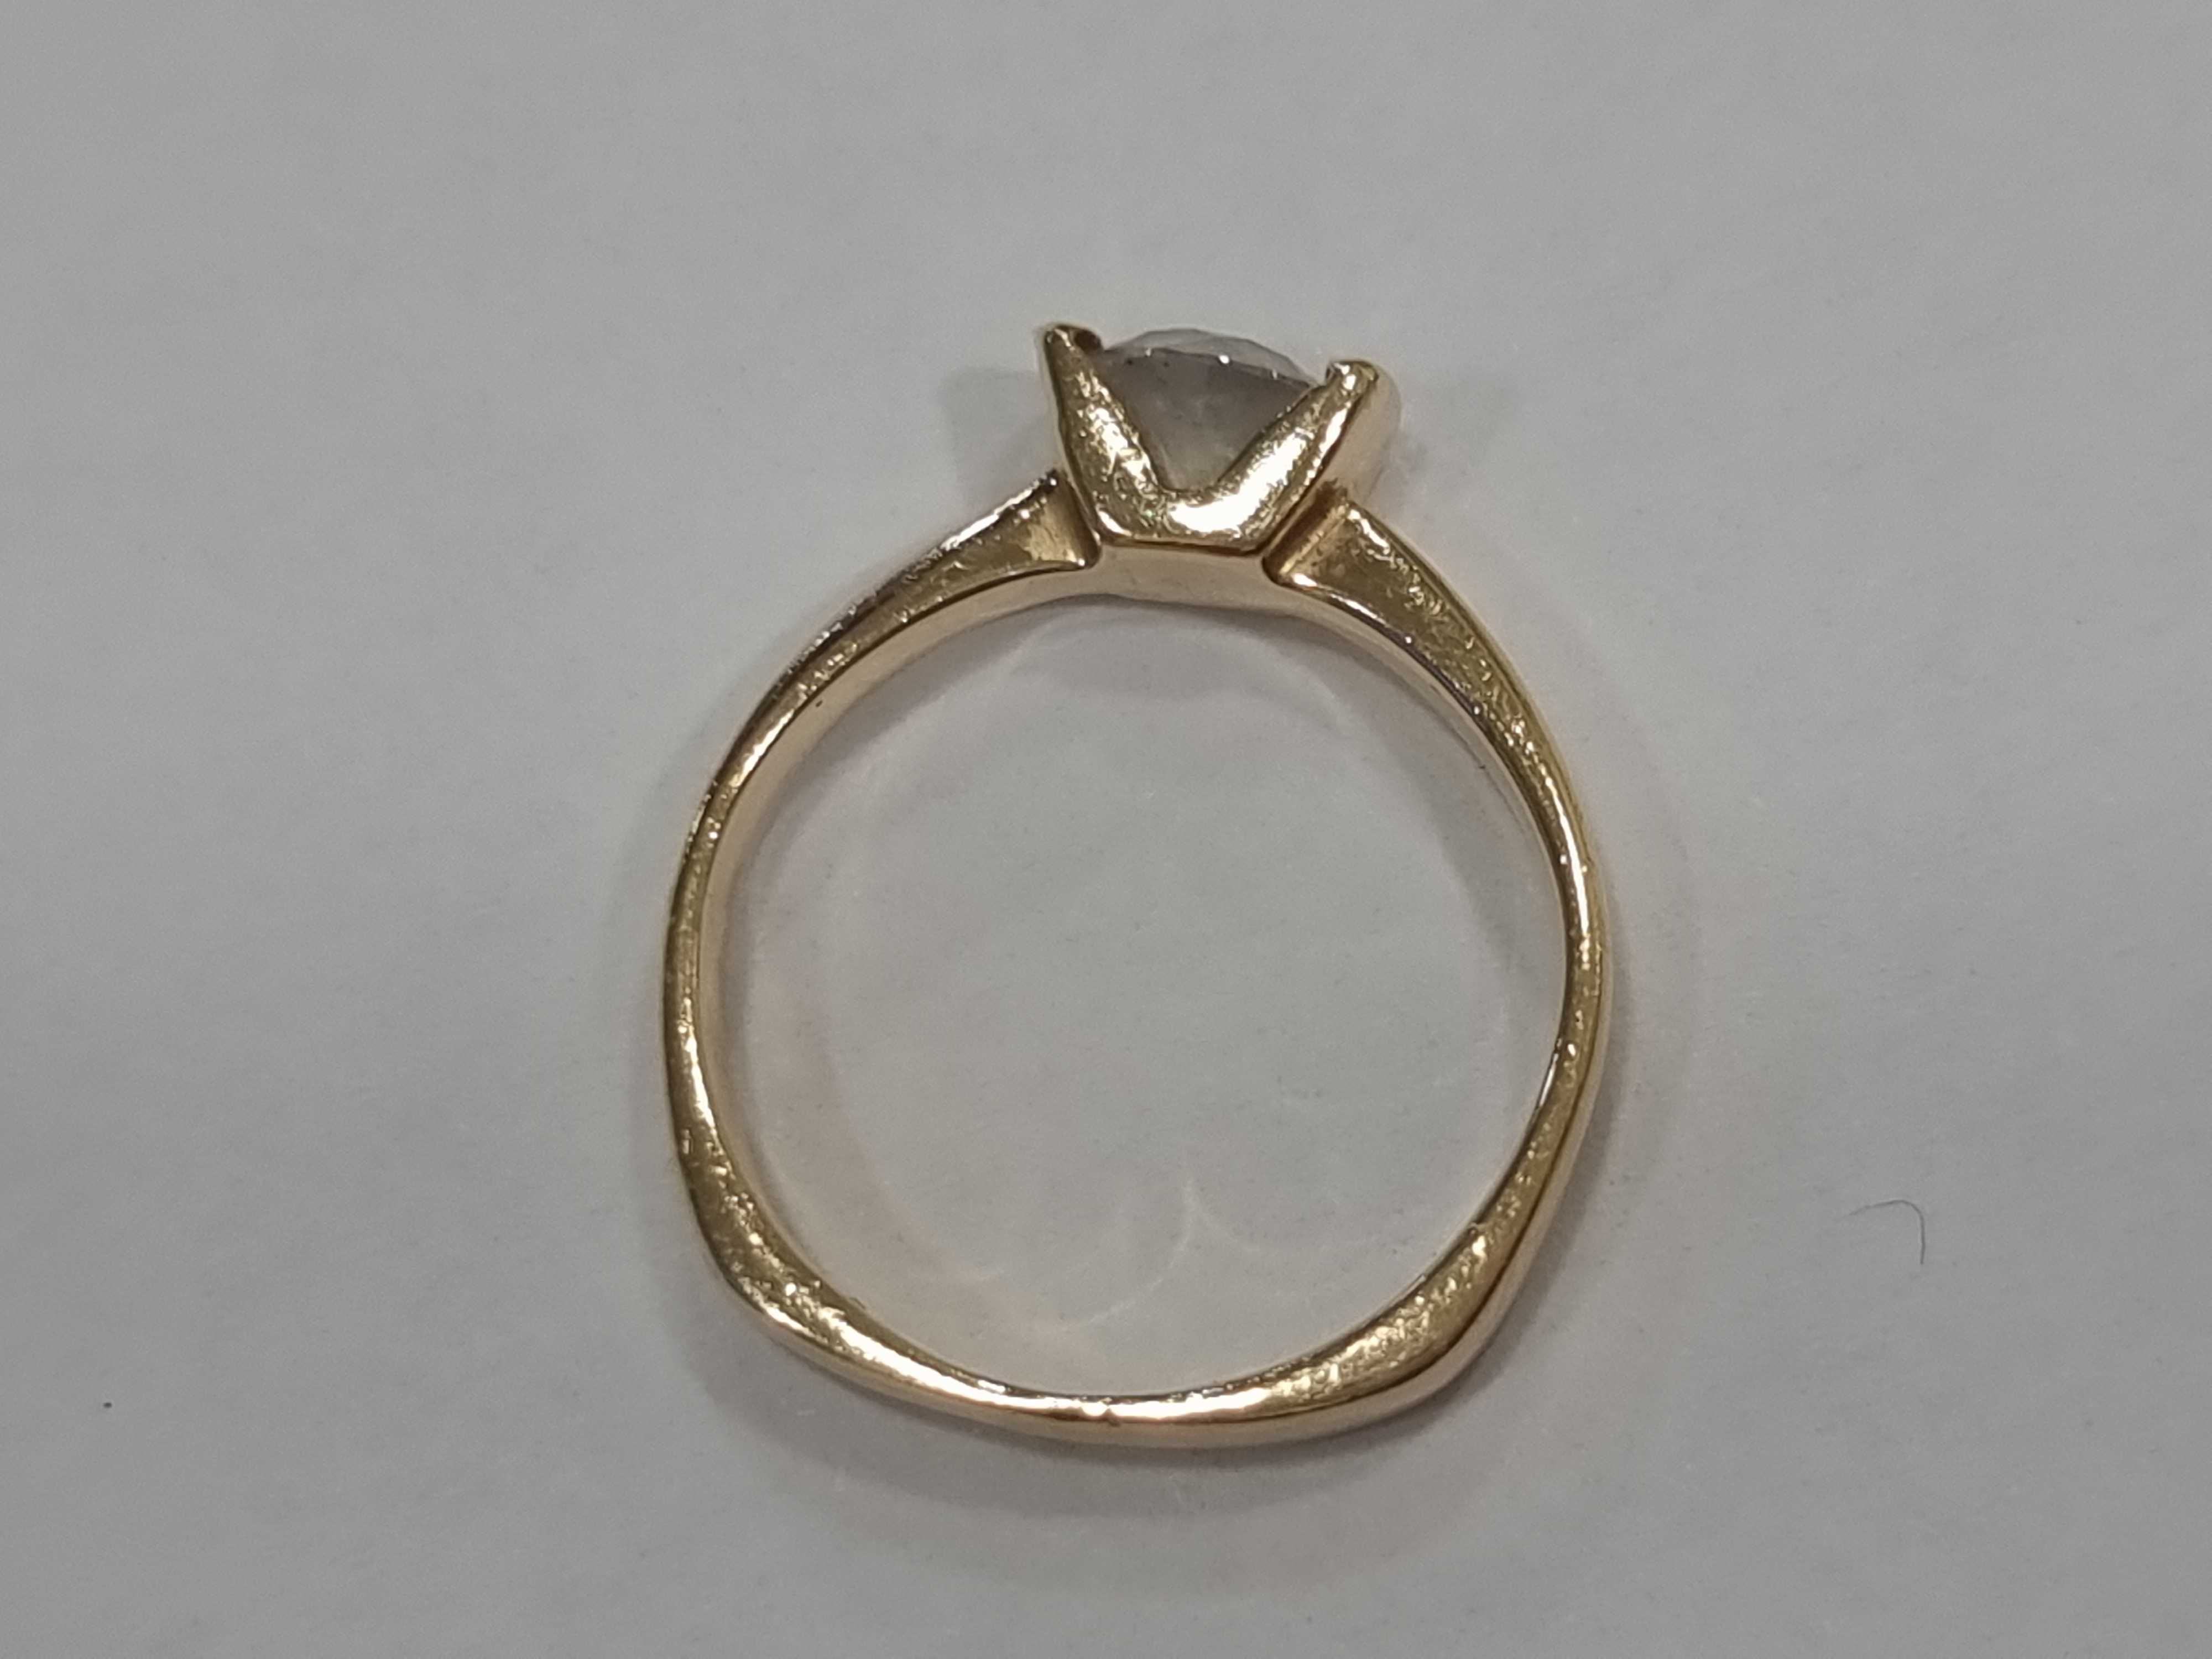 Златен пръстен - Дамски пръстен 14К 3.15 гр.